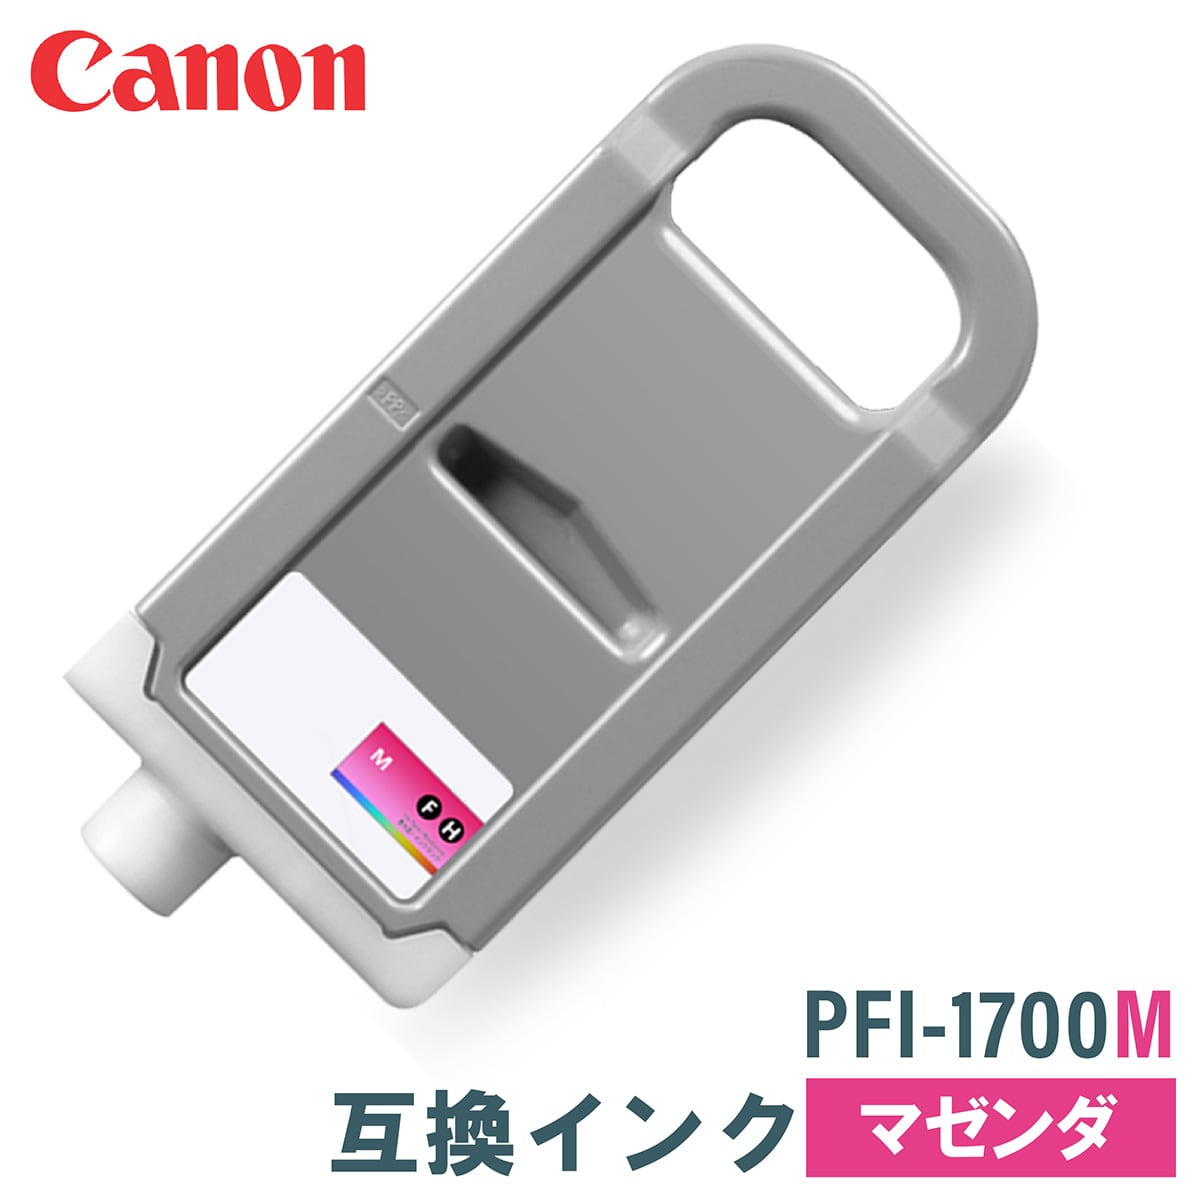 canon キヤノン 大判プリンタ インクタンク PFI-1700 R レッド 700ml